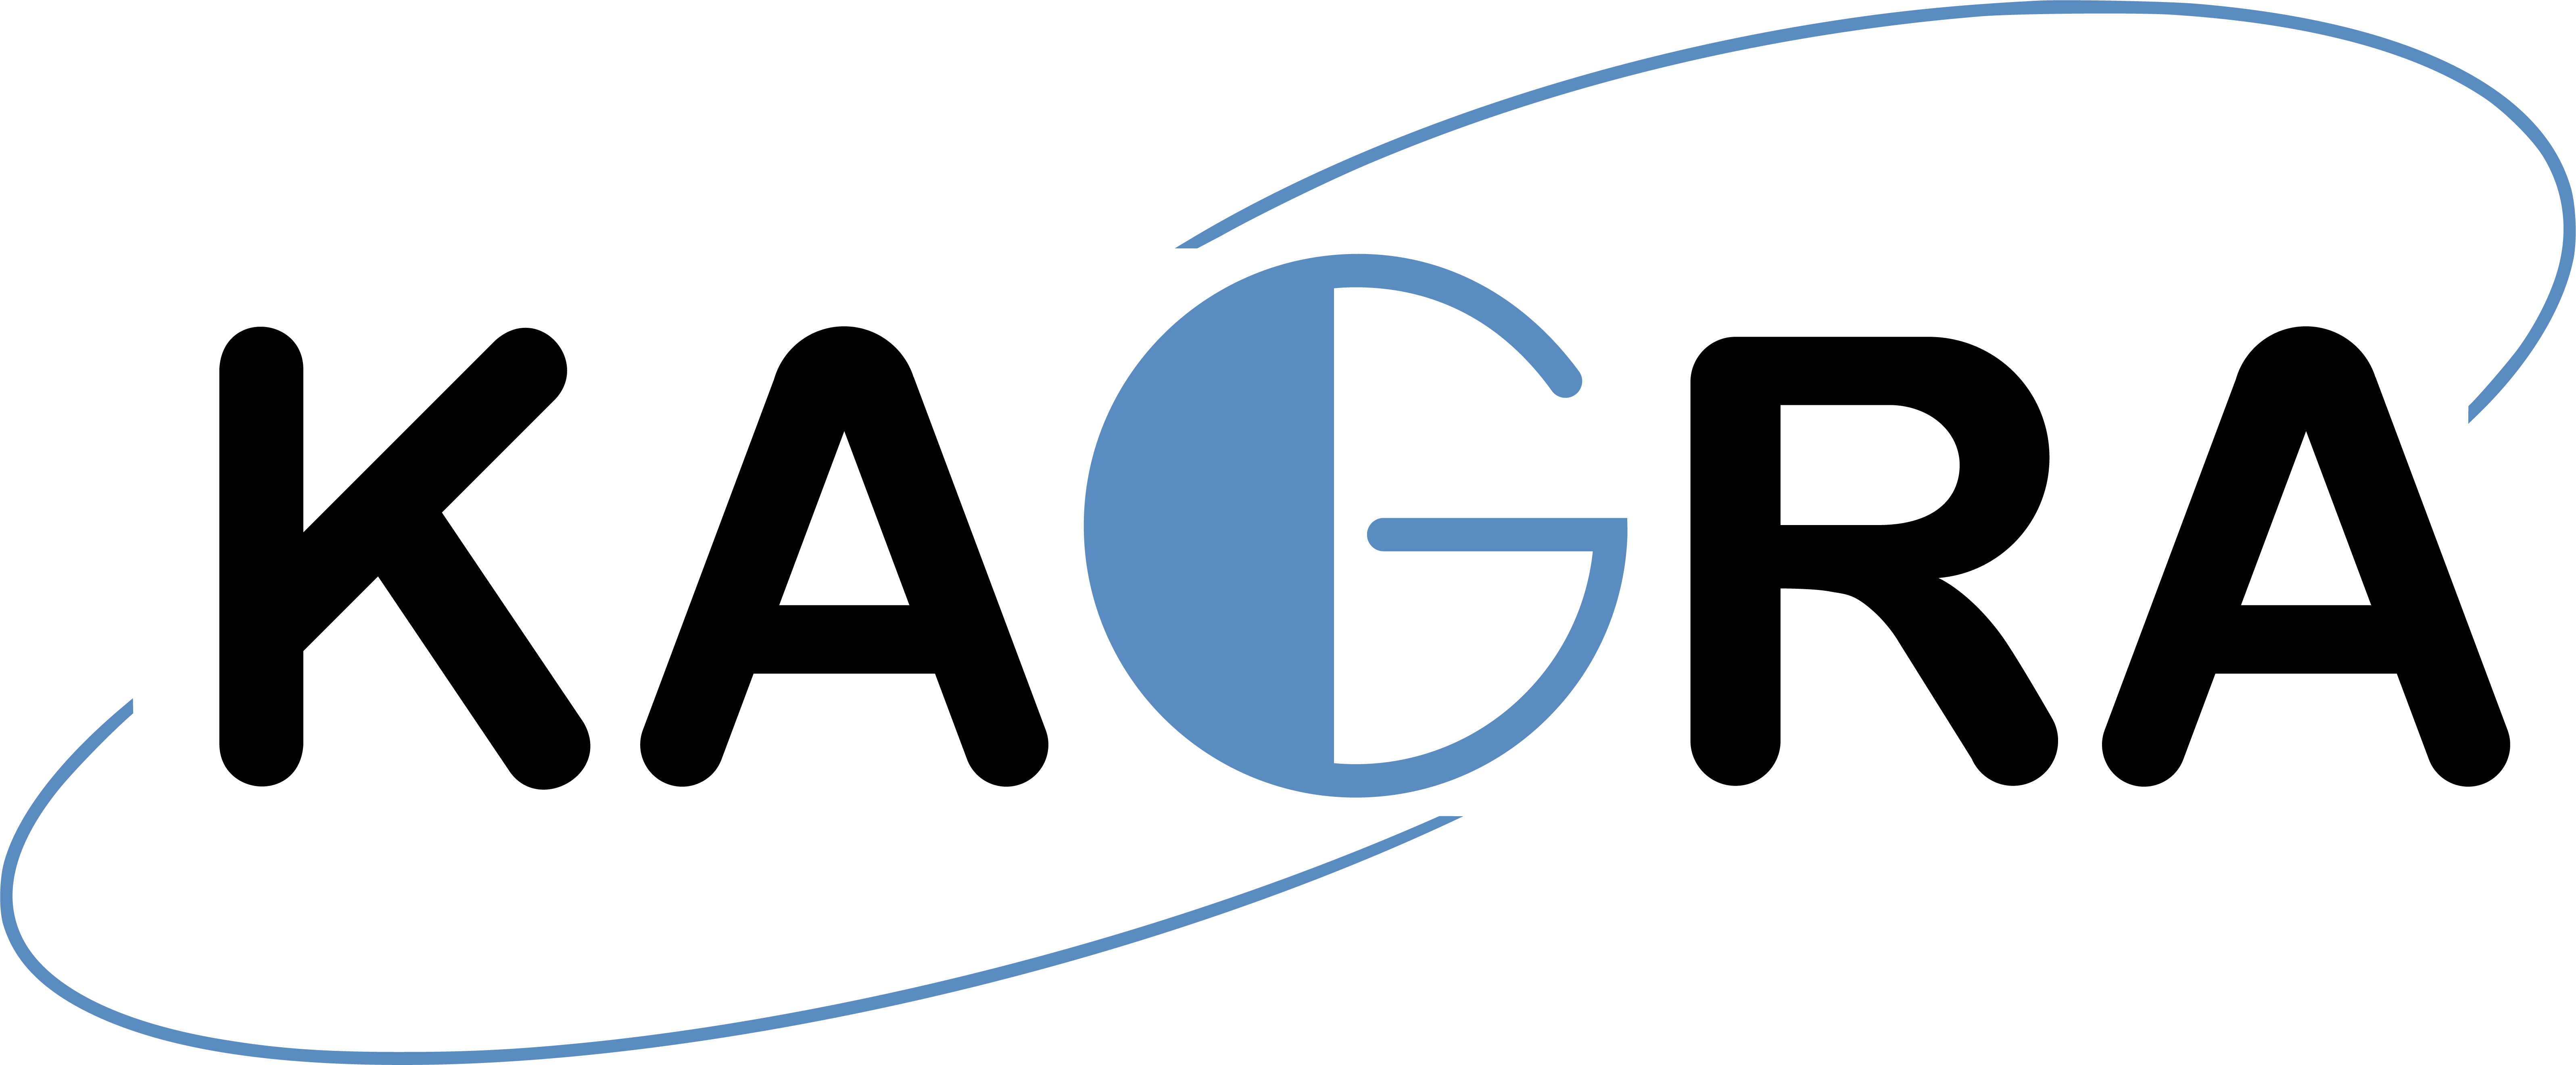 KAGRA logo